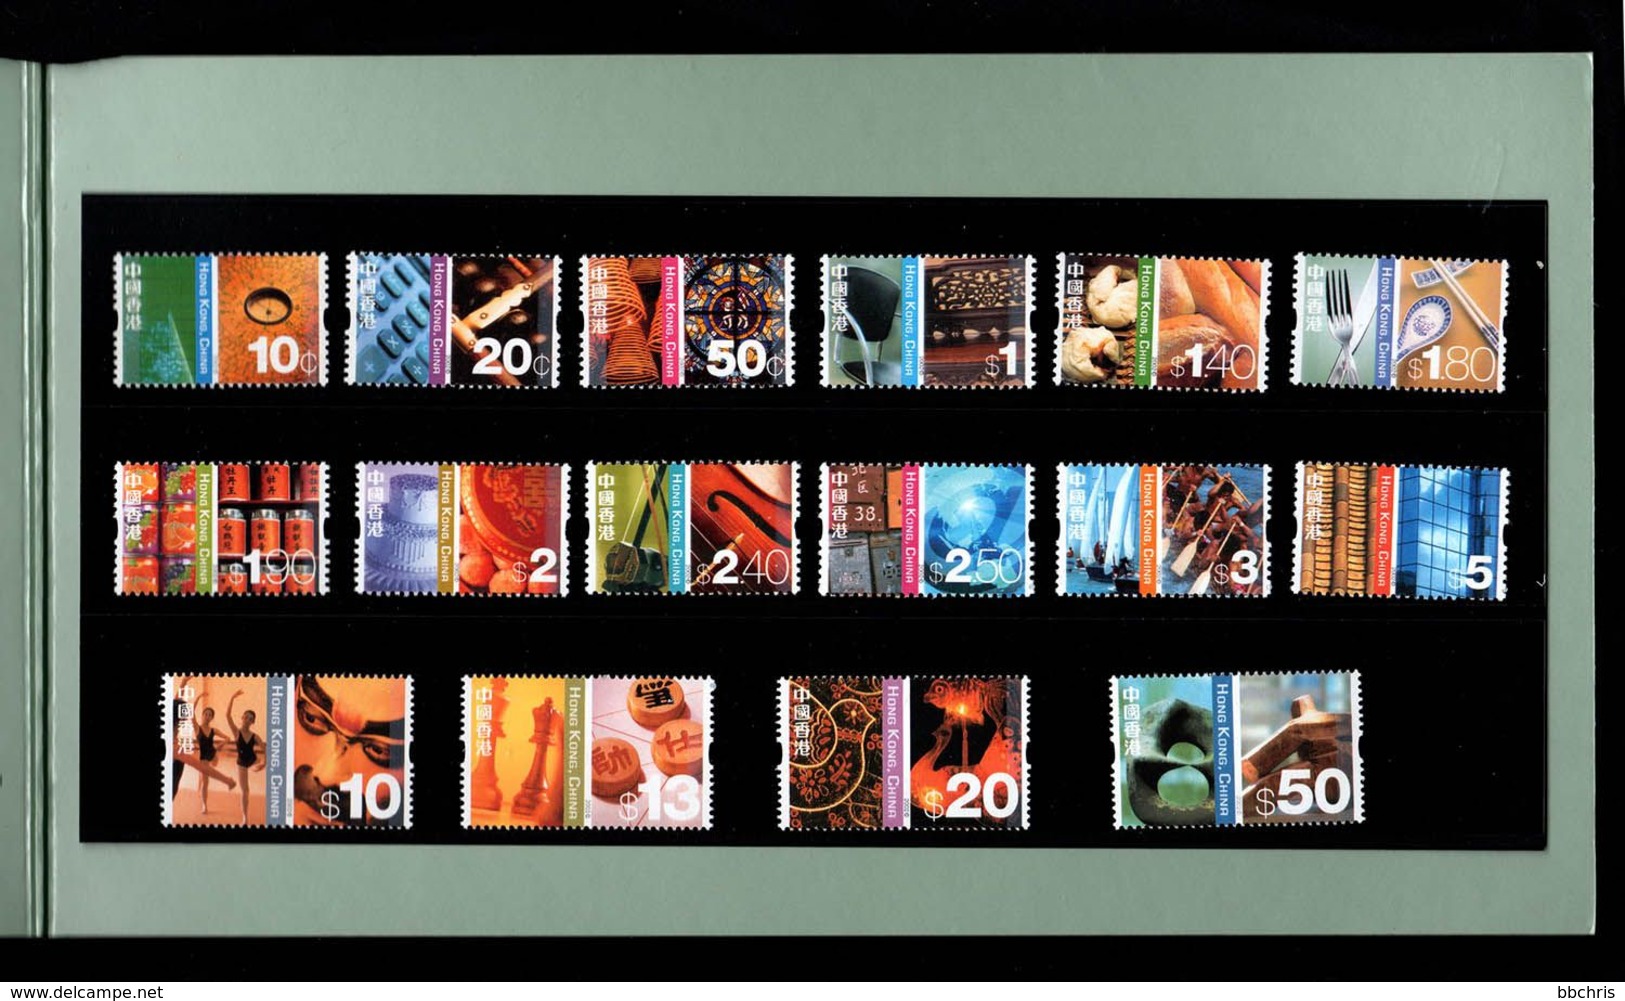 Hong Kong 2002 Definitive Stamps 10c-$50 Presentation Pack MNH SG 1119-1134 - Carnets